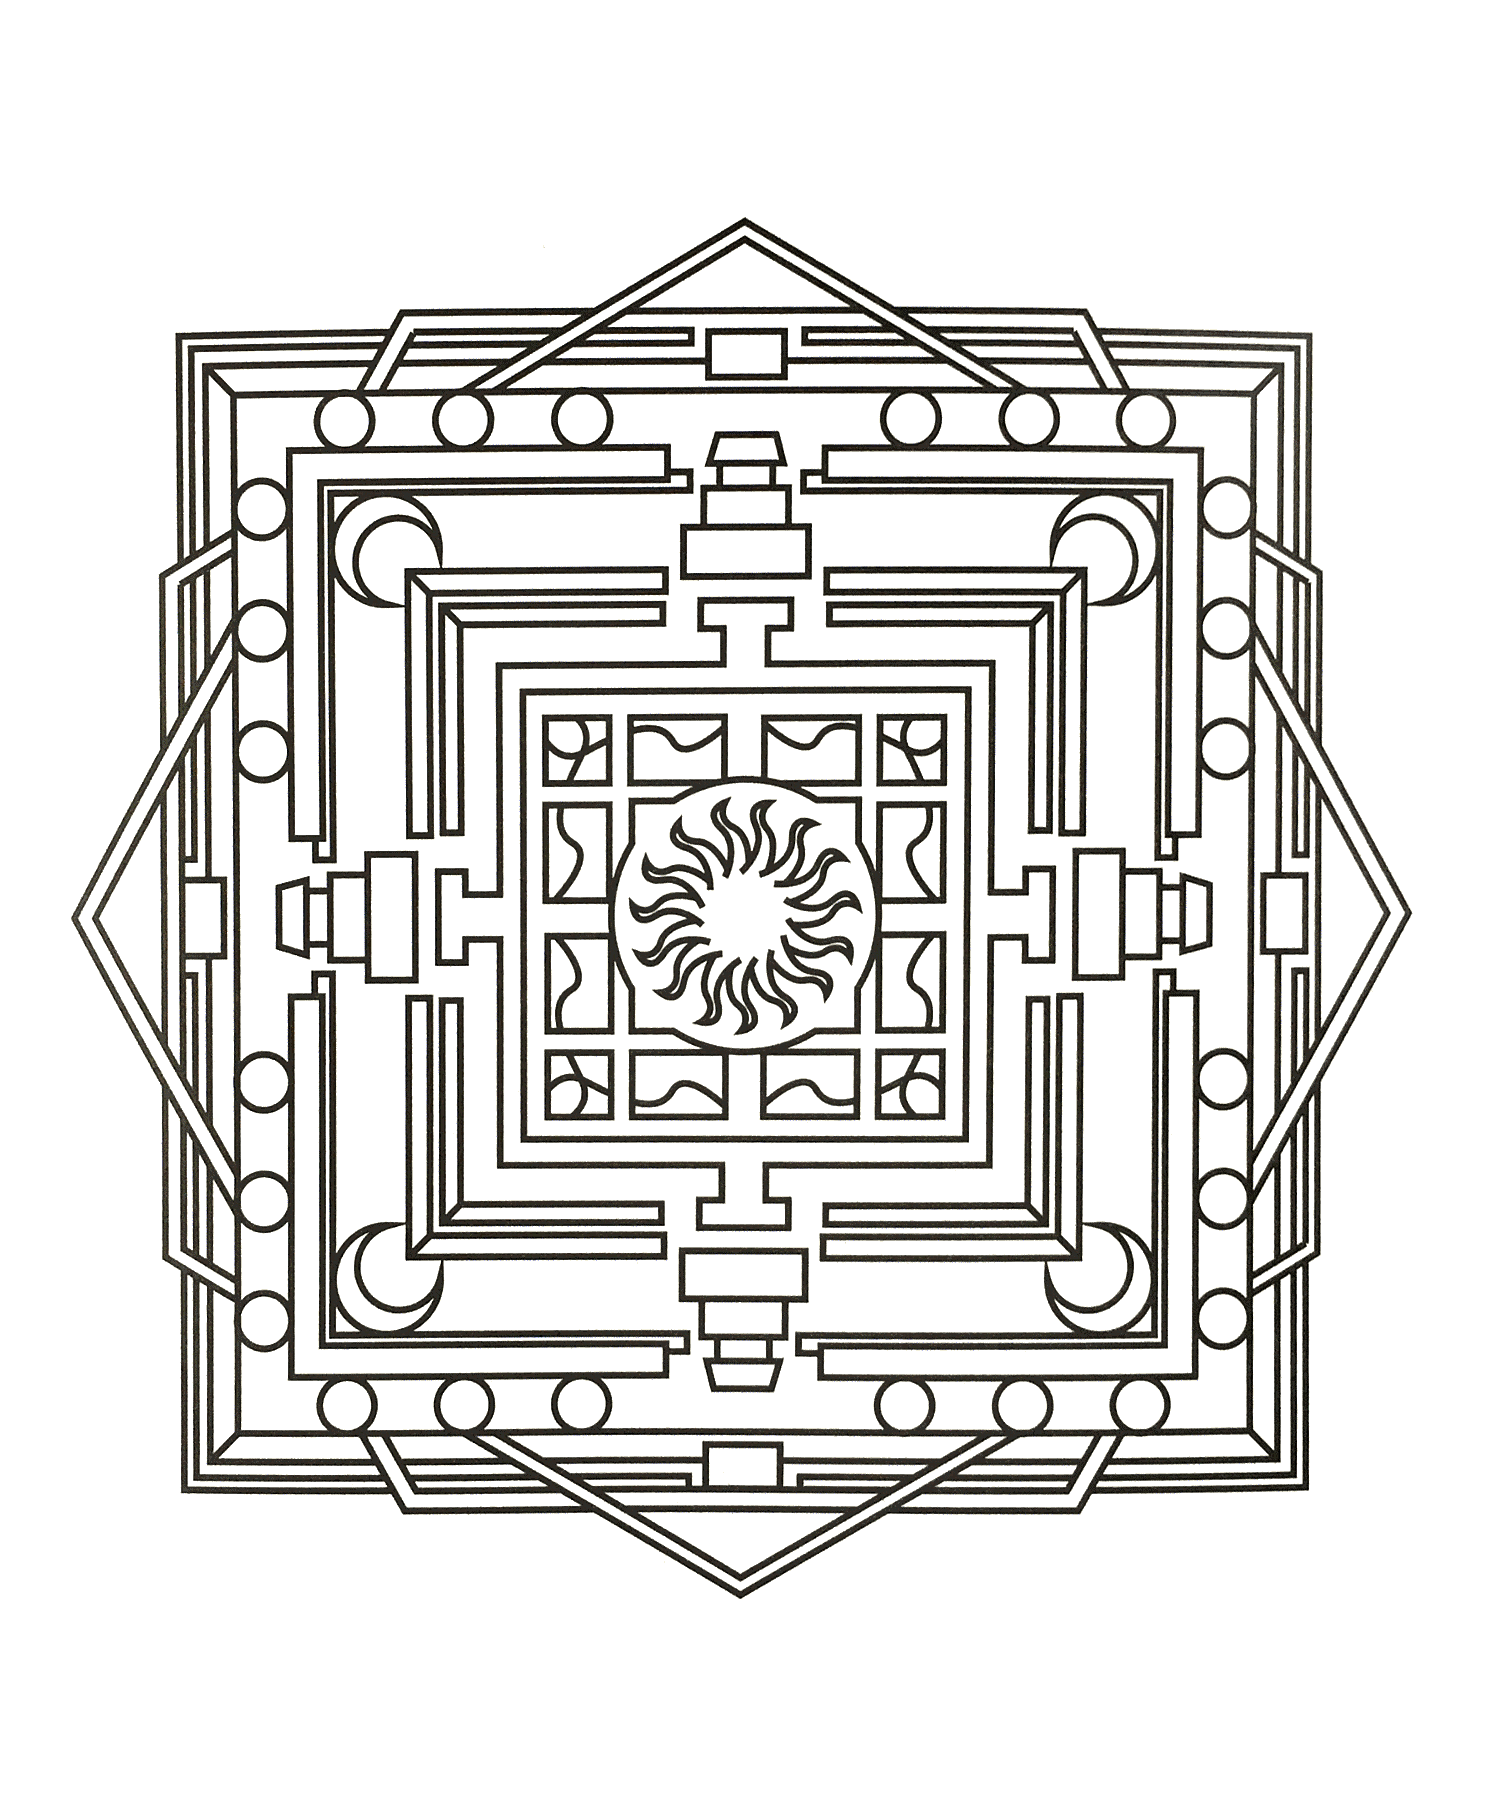 Mandala à colorier avec différentes formes géométriques ainsi qu'un très joli soleil au centre. Assez difficile à colorier.